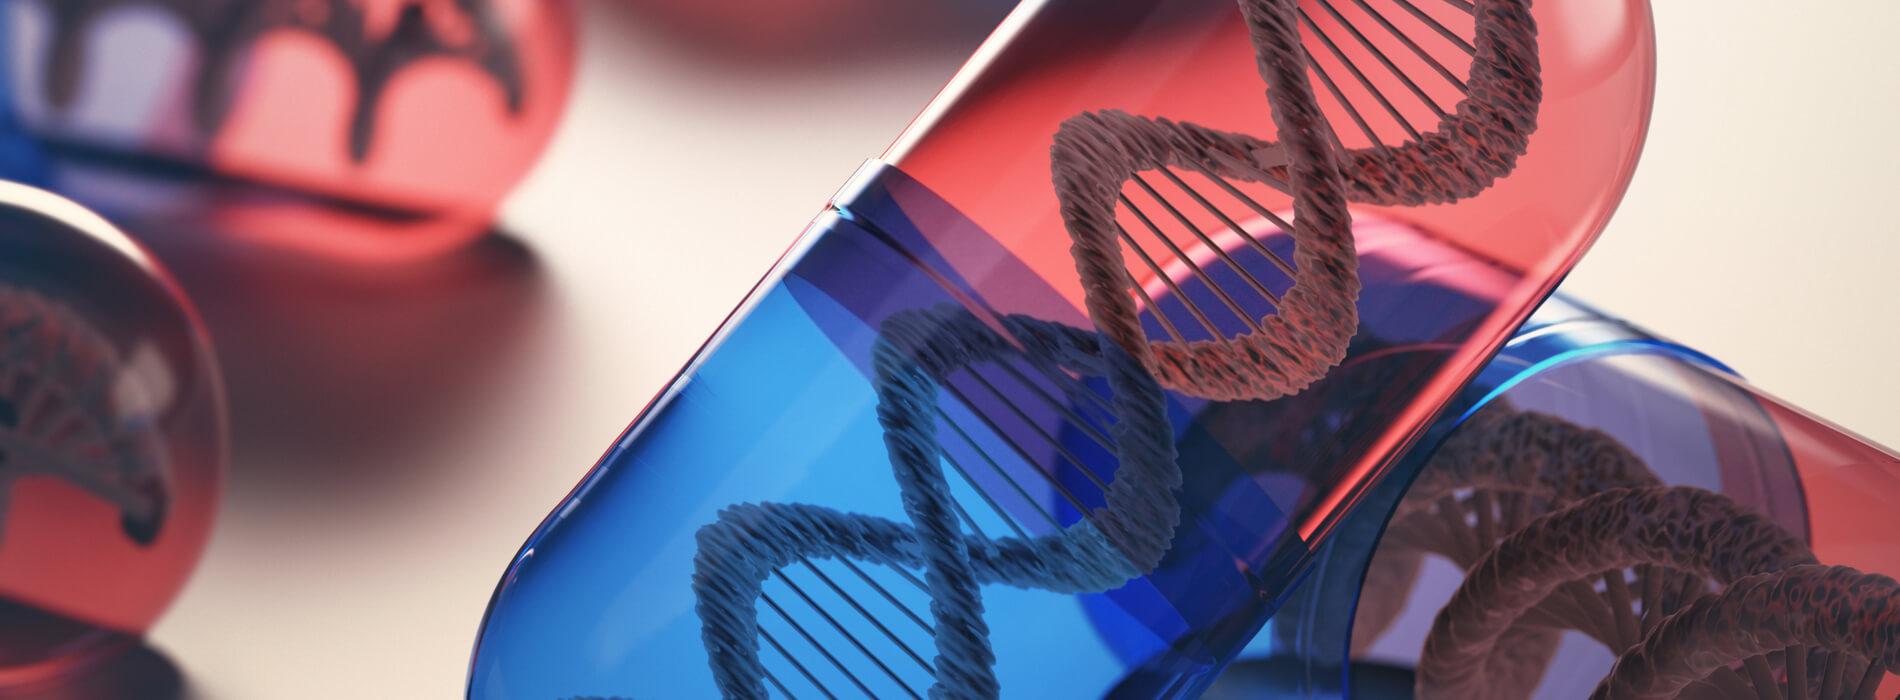 Dieta zgodna z DNA - sposób na piękną sylwetkę